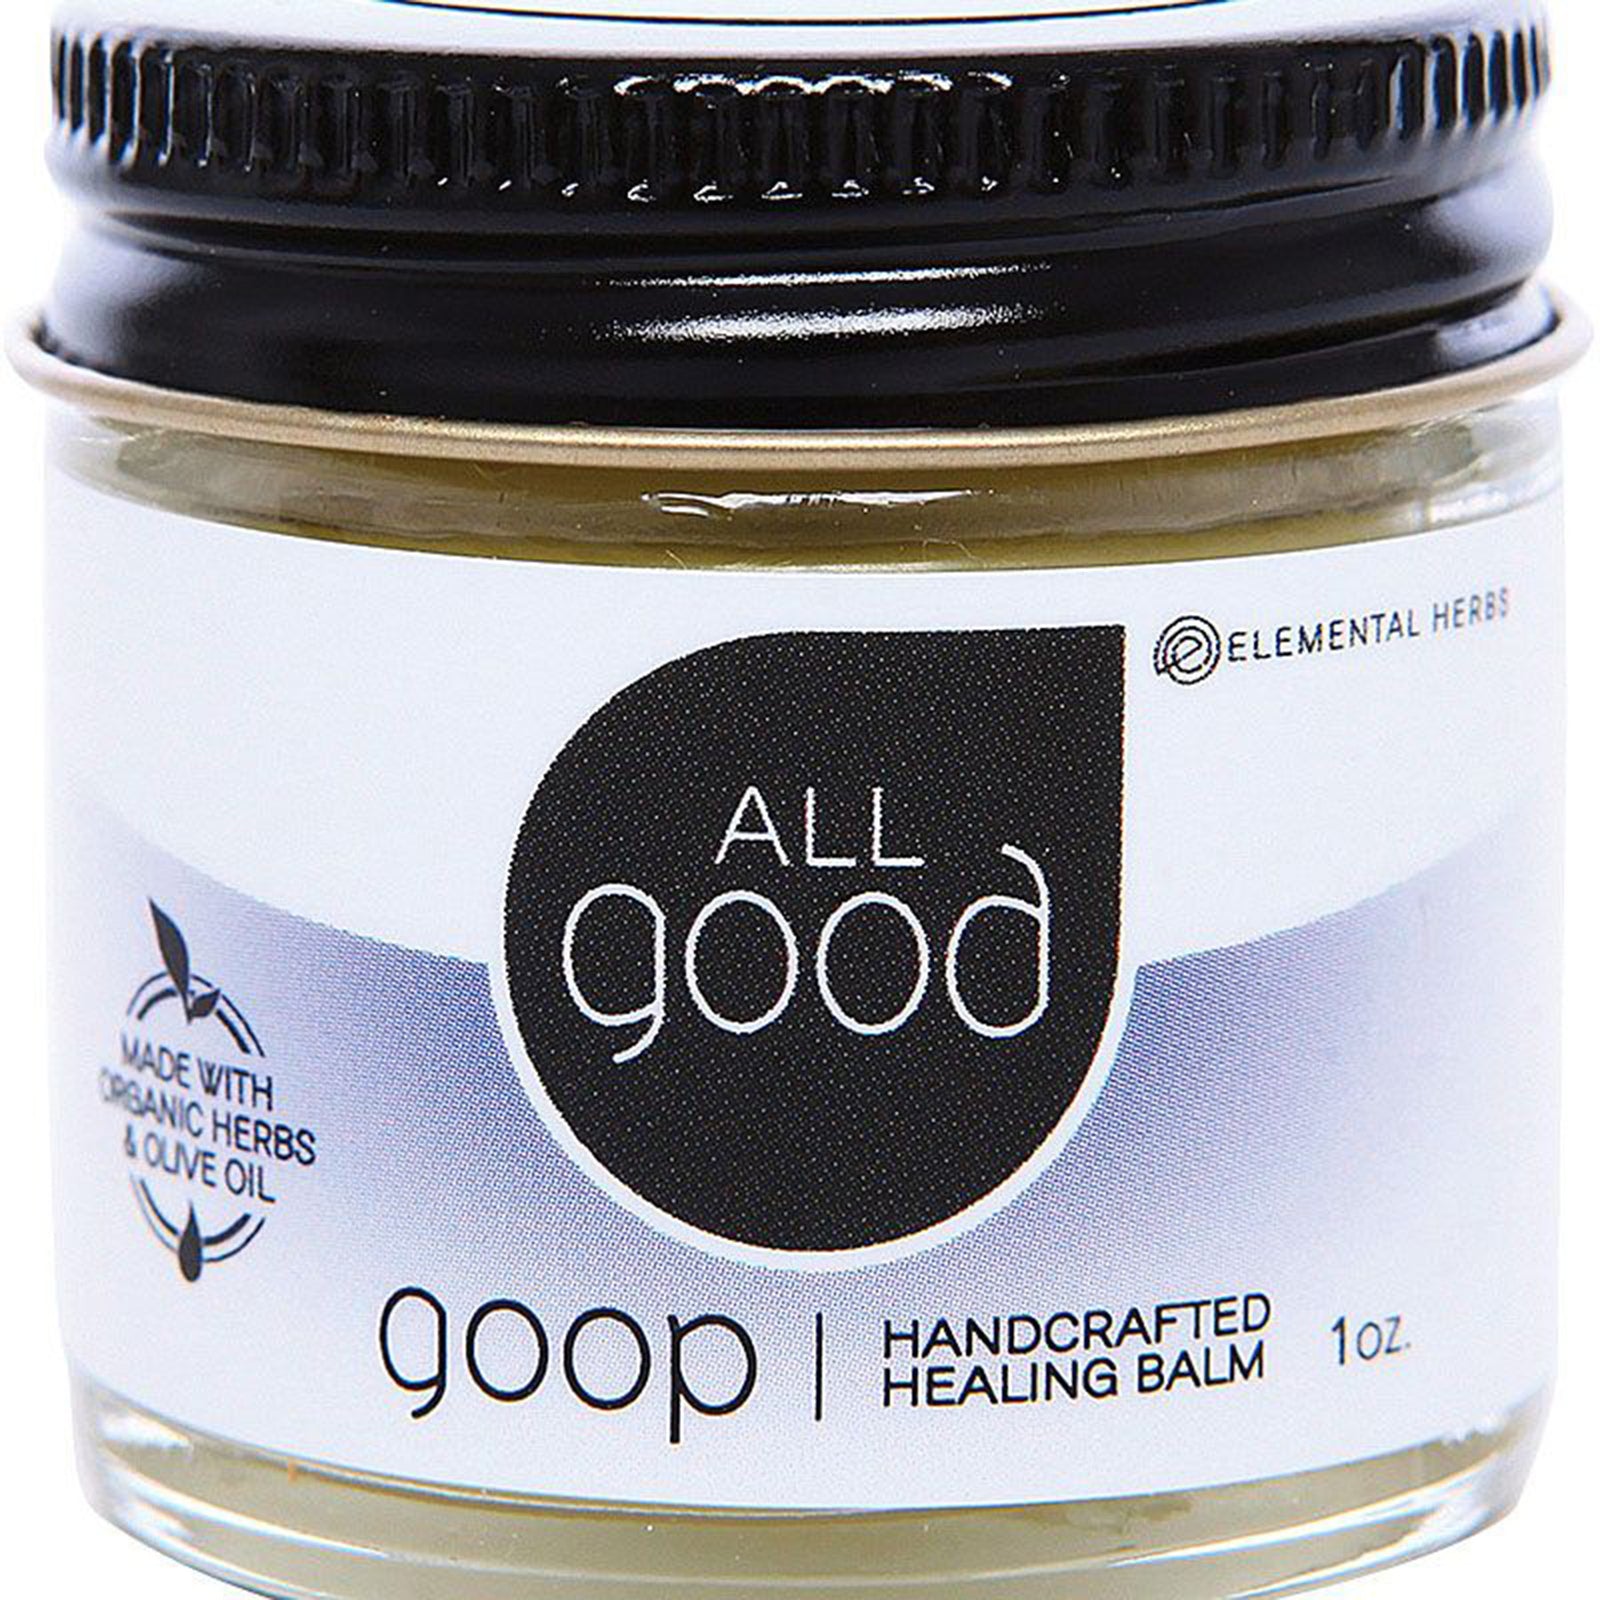 all good goop handcrafted healing balm jar 1-ounce